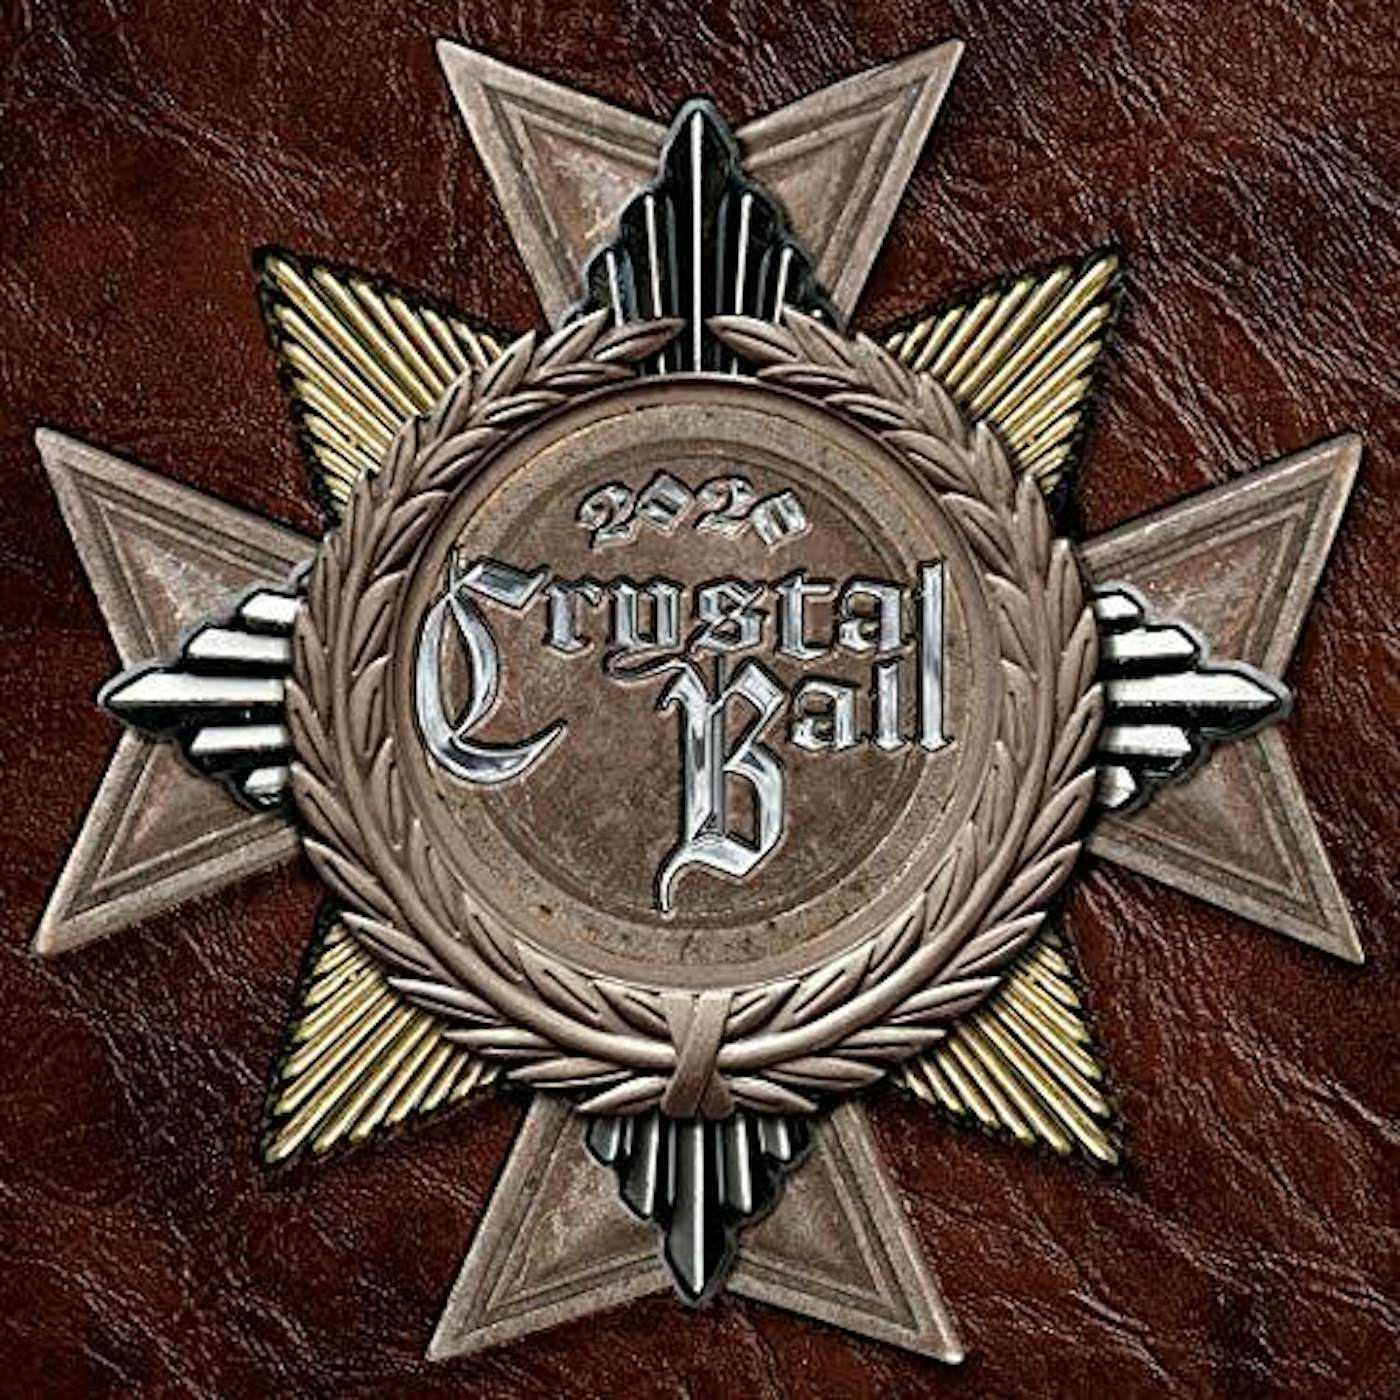 Crystal Ball 2020 CD